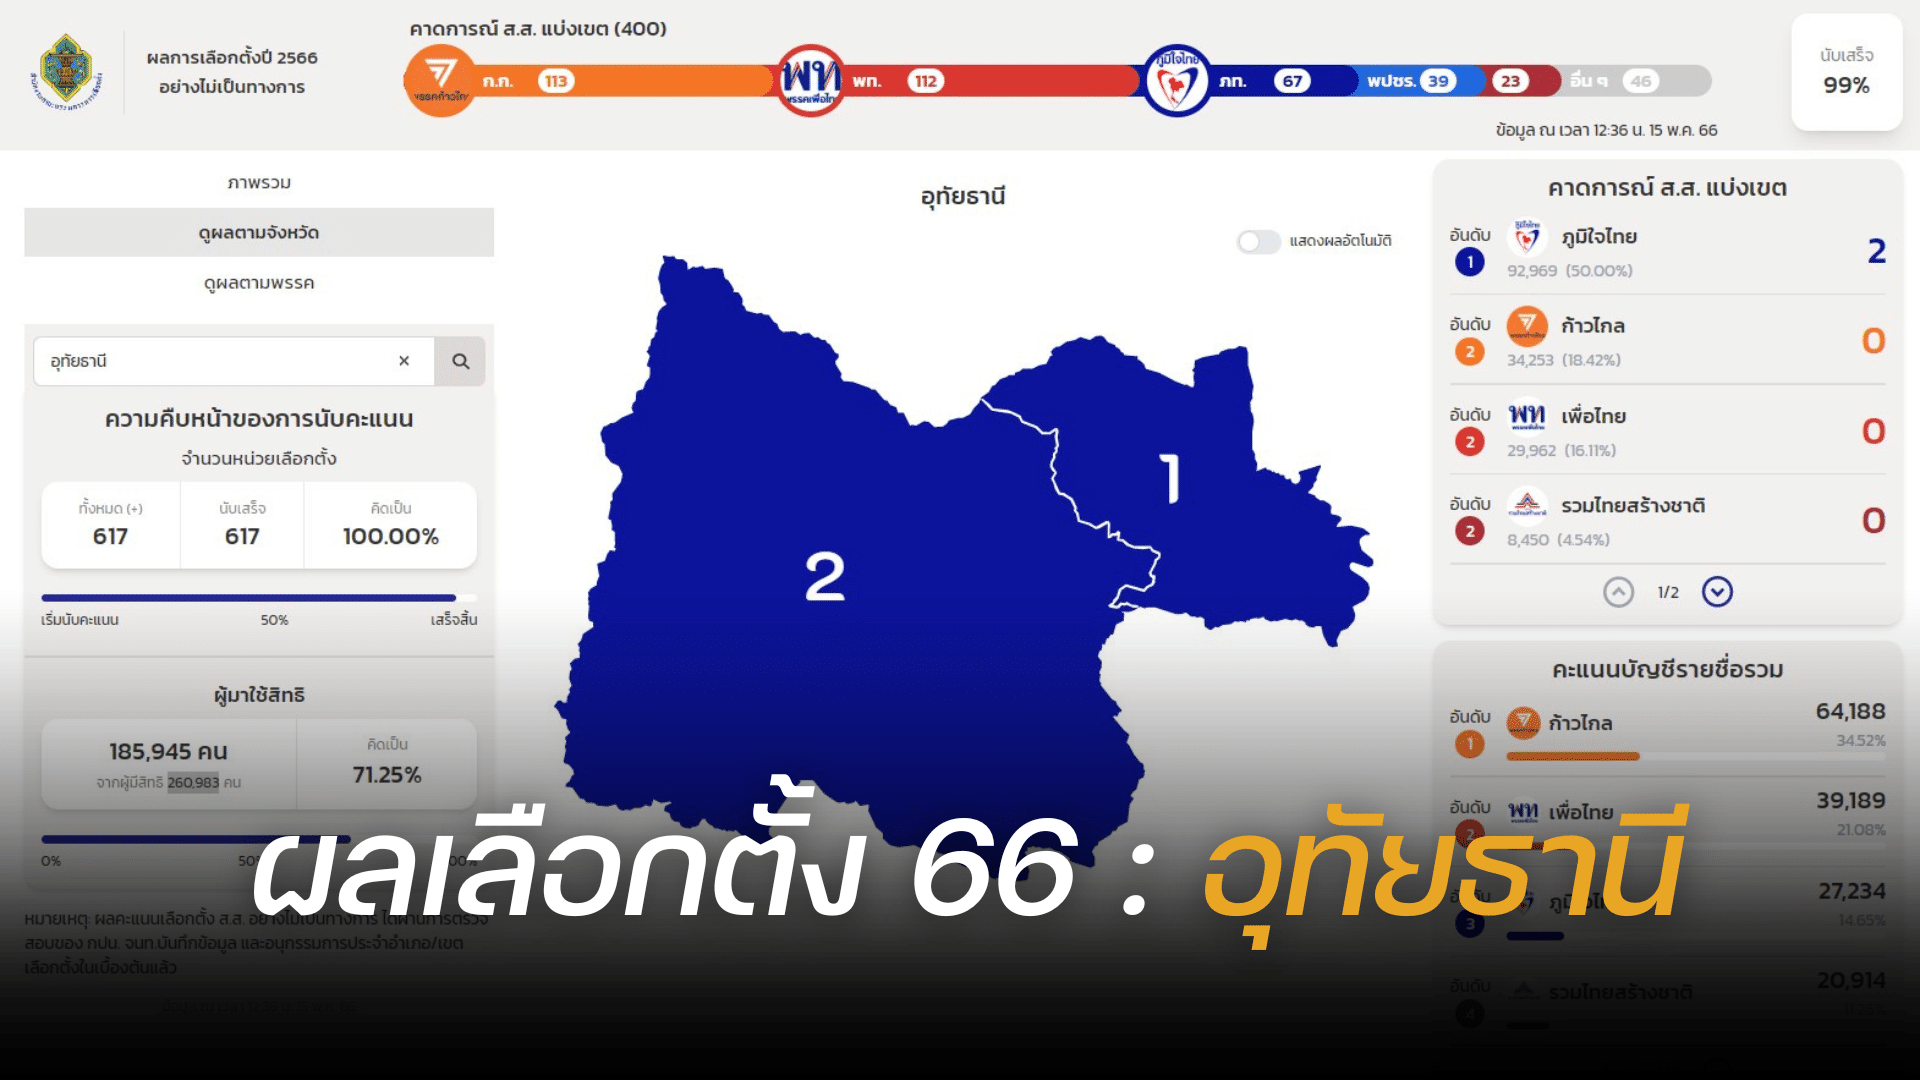 Thailand election 2566 Uthai Thani